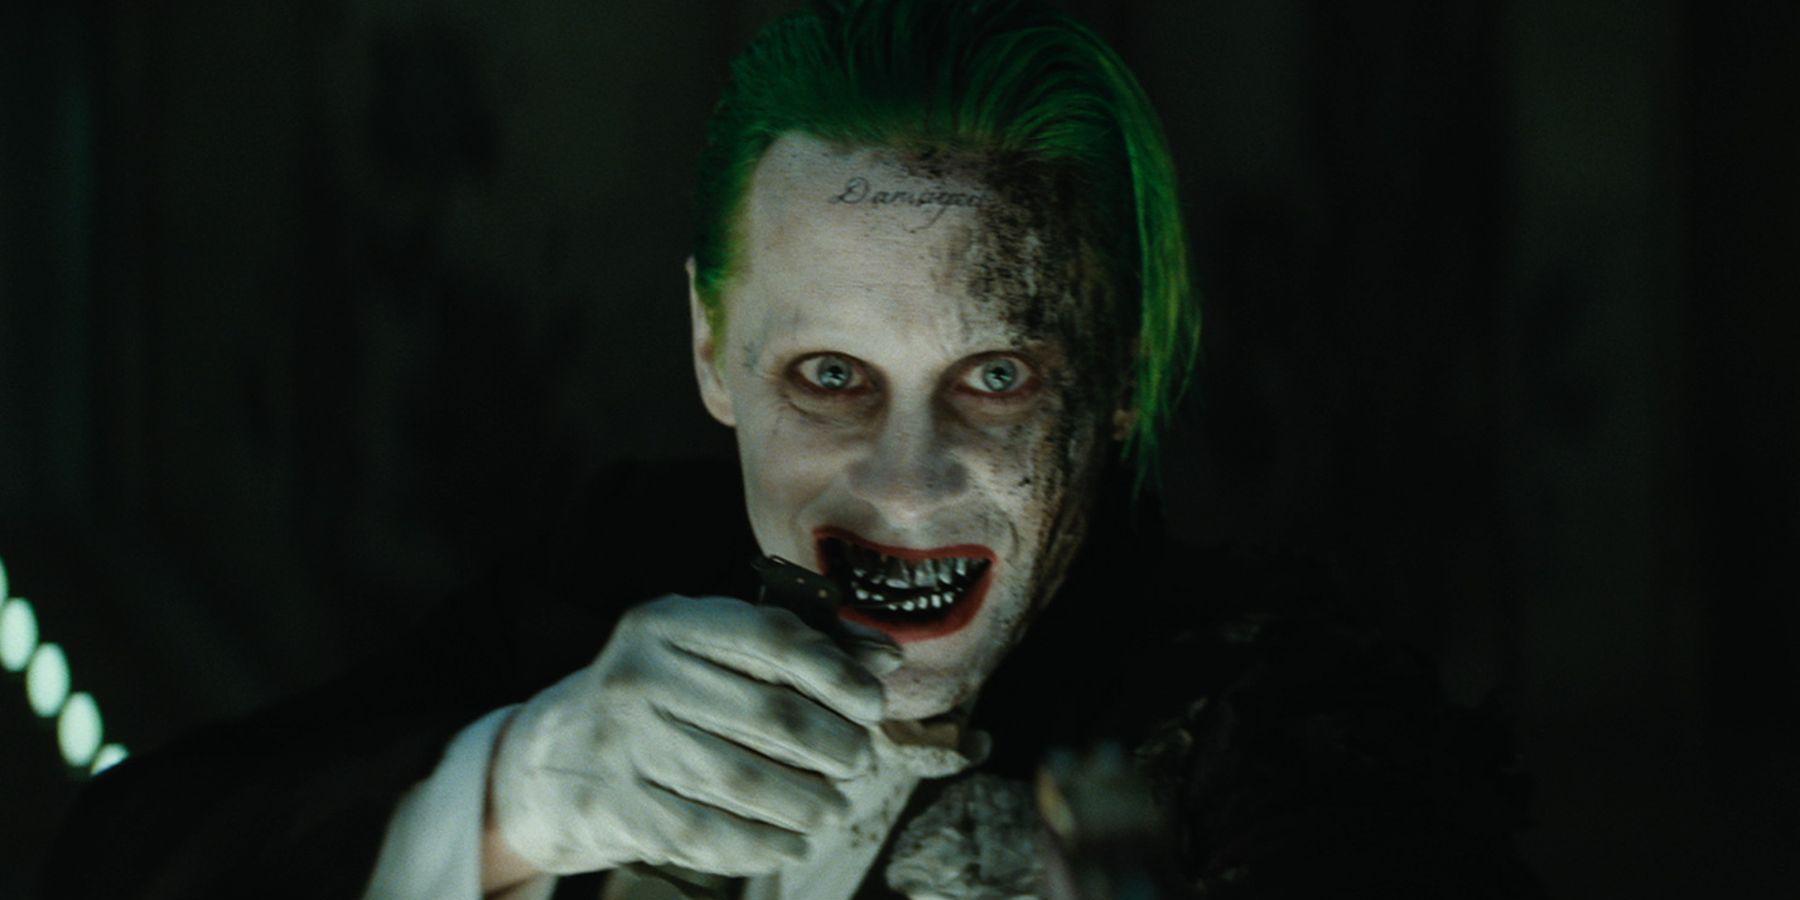 The Joker | Batman Wiki | Fandom powered by Wikia